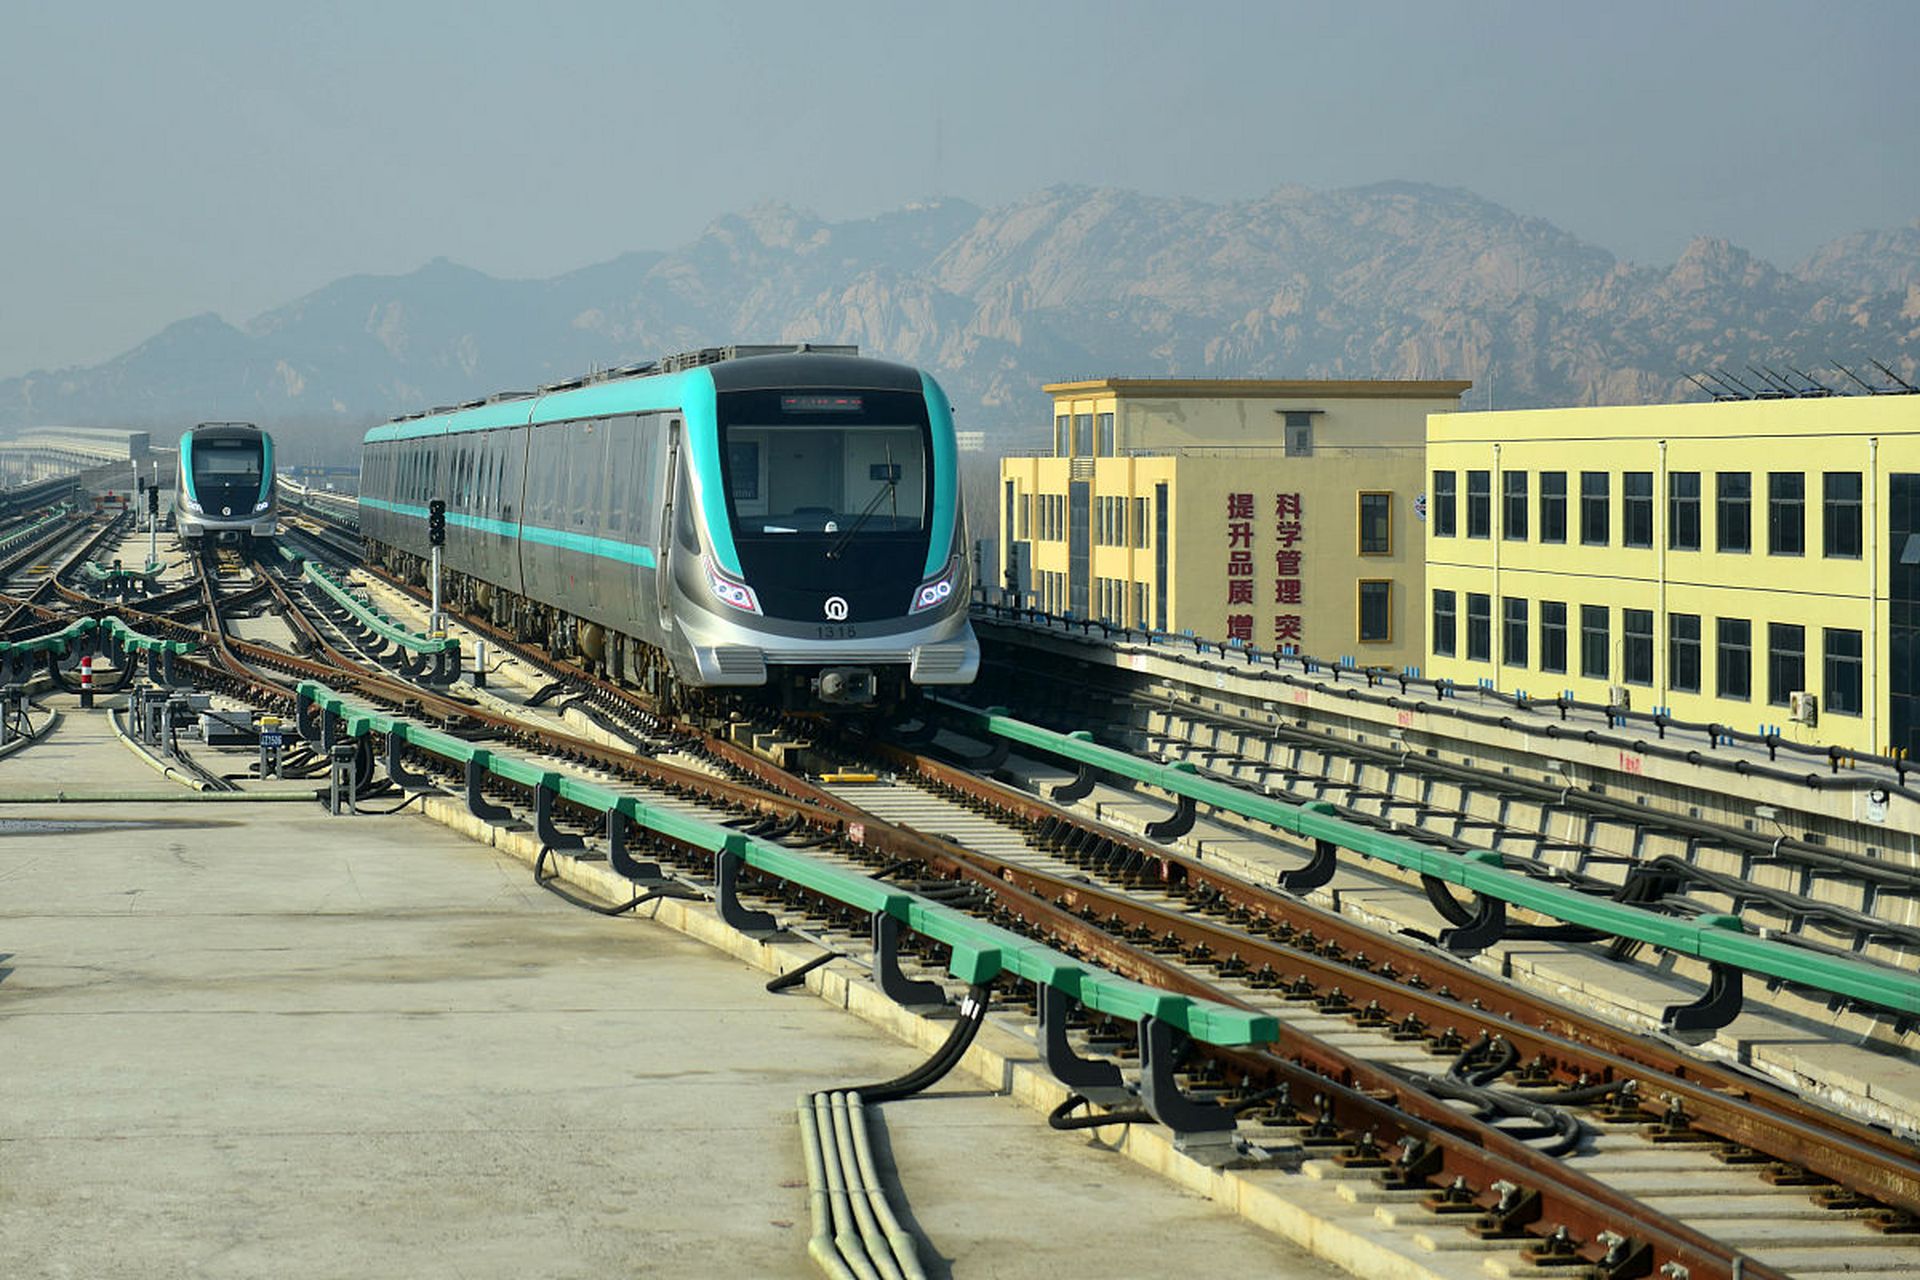 大连地铁,是中国辽宁省大连市的城市轨道交通系统,自2003年5月1日正式